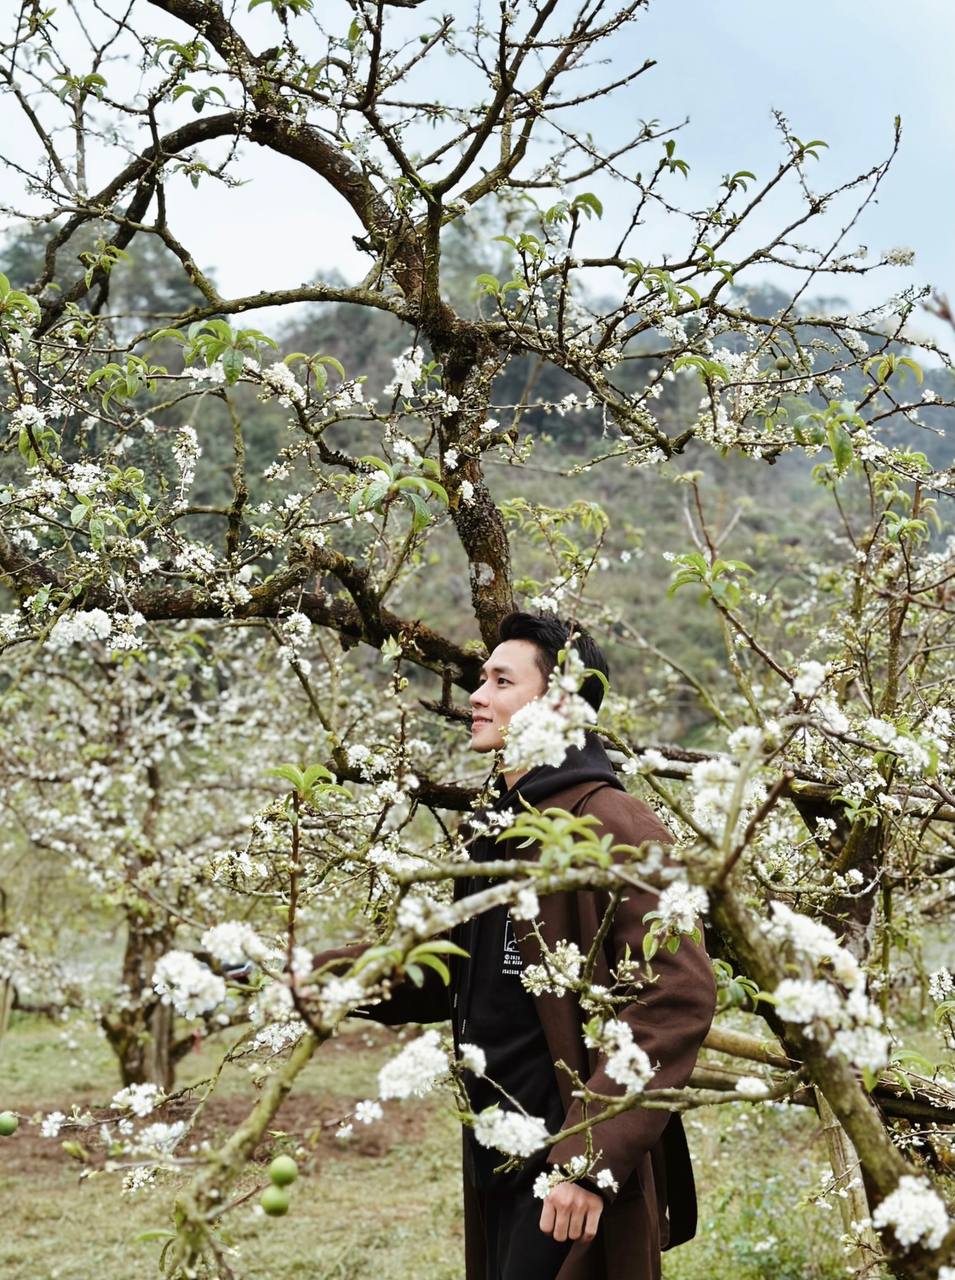 Mộc Châu trở thành điểm siêu hot dịp đầu xuân với những cây hoa mận phủ trắng núi đồi - Ảnh 13.